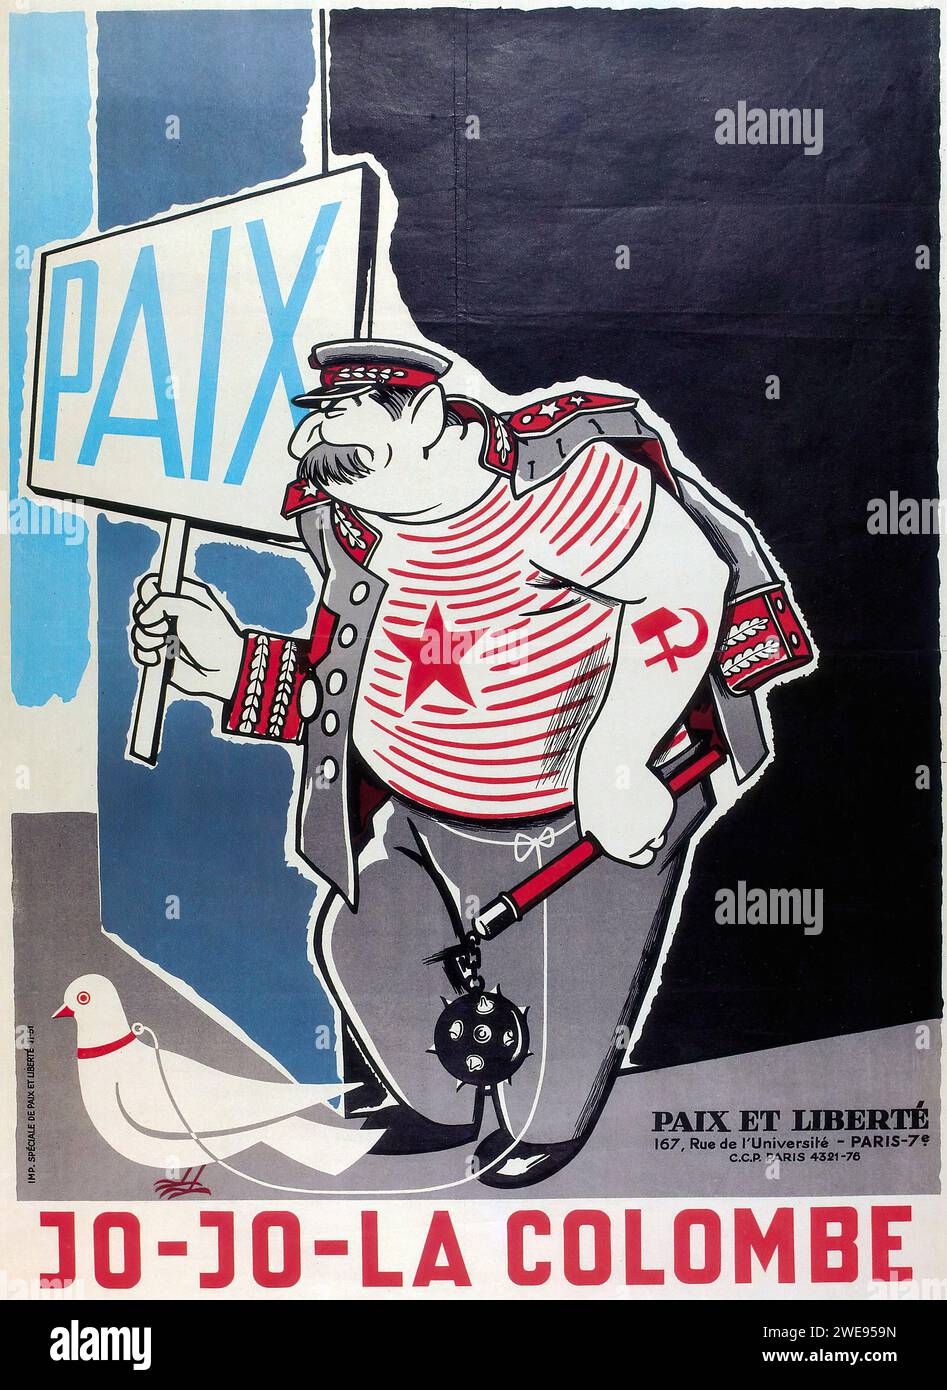 'PAIX JO-JO-LA COLOMBE PAX et LIBERTÉ 167, rue de l'Université - PARIS 7' ['PAIX JO-JO-LA COLOMBE PAX ET LIBERTY 167, rue Université - PARIS 7'] Publicité française vintage. L'image montre une caricature de Staline tenant un panneau qui dit «PAIX» avec une colombe à côté, sur un fond bleu. Le style est satirique avec des lignes audacieuses et une représentation caricaturale, typique des commentaires politiques du milieu du 20e siècle. Banque D'Images